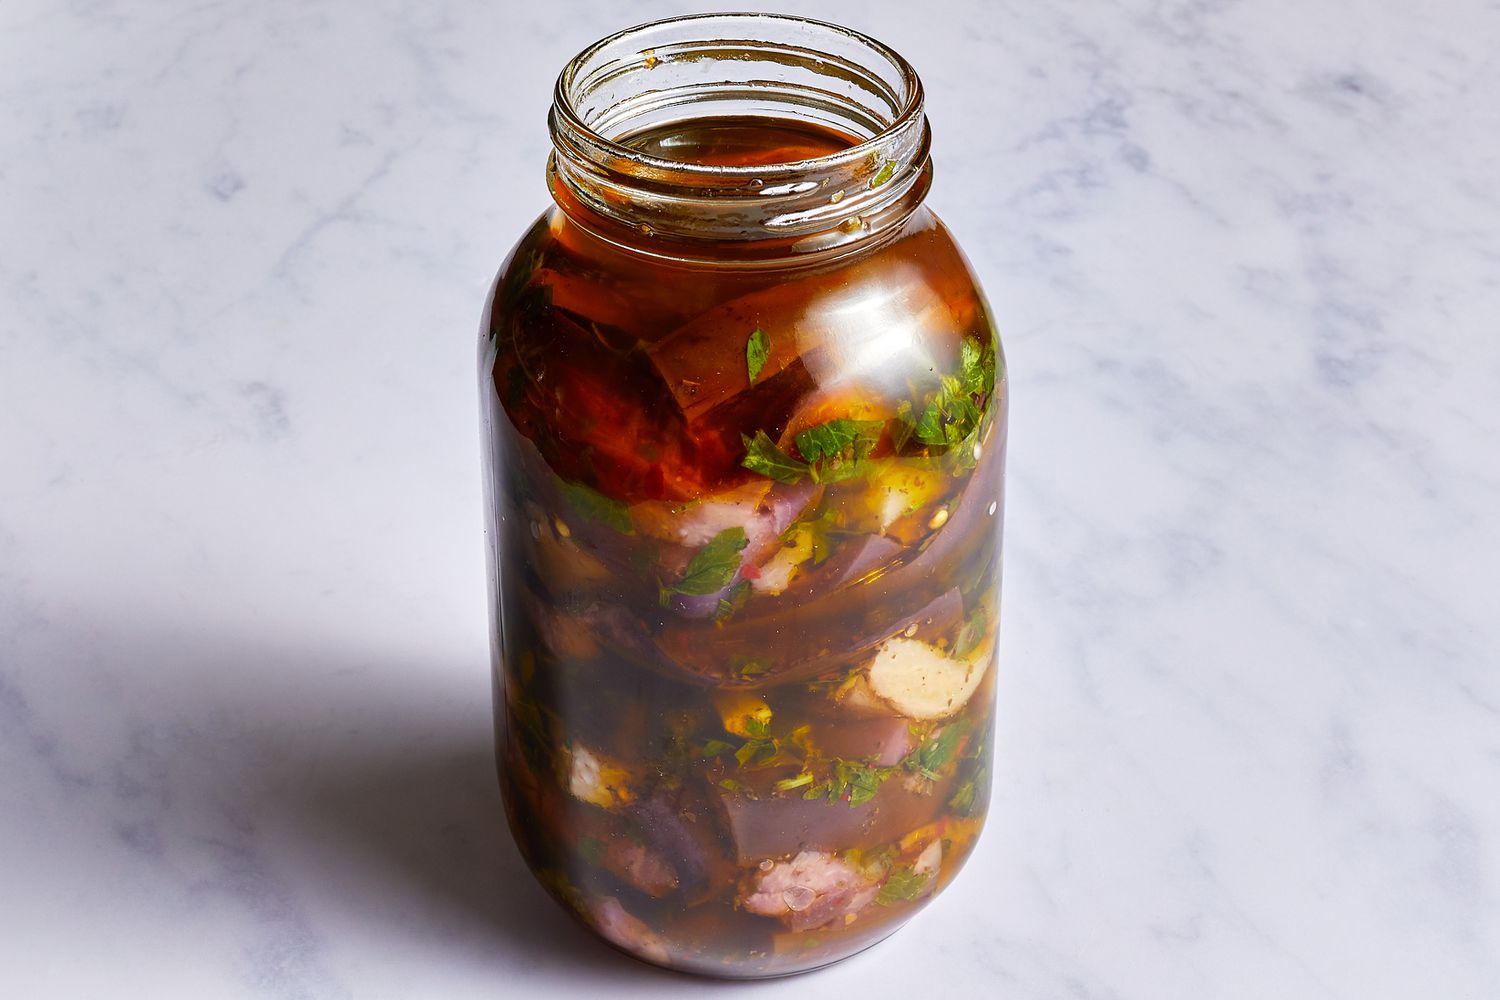 Pickled eggplant mixture in a quart jar